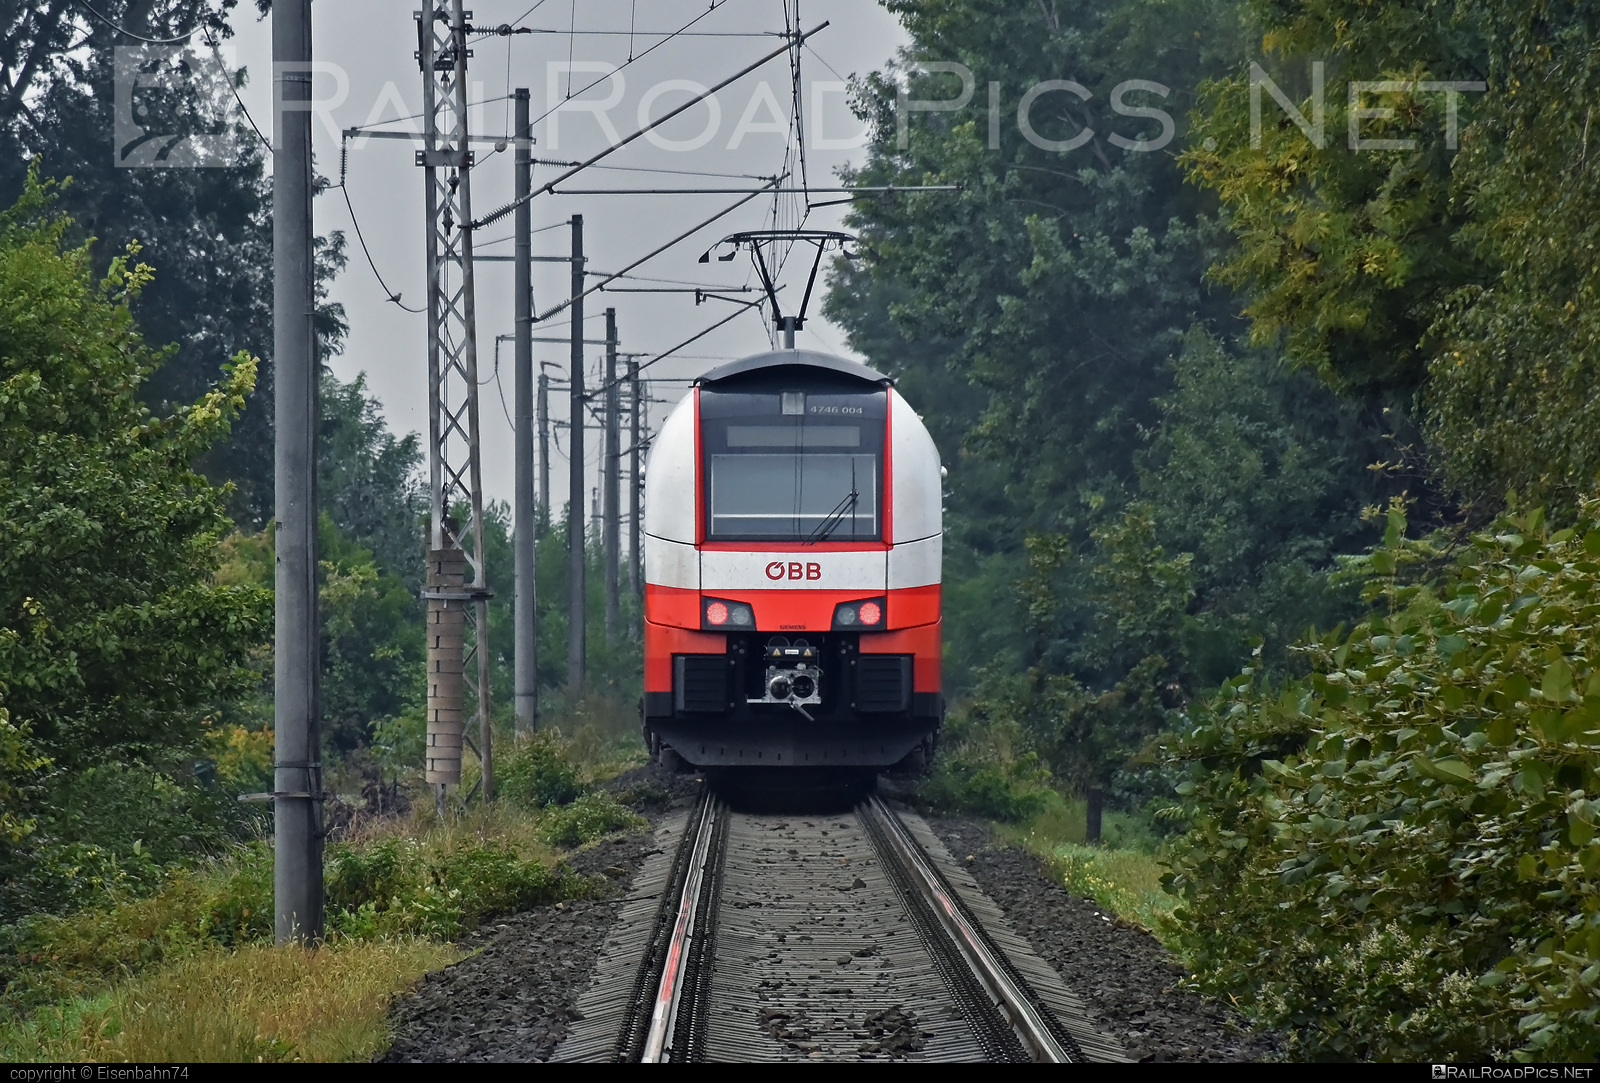 Siemens Desiro ML - 4746 004 operated by Österreichische Bundesbahnen #cityjet #desiro #desiroml #obb #obbcityjet #osterreichischebundesbahnen #siemens #siemensdesiro #siemensdesiroml